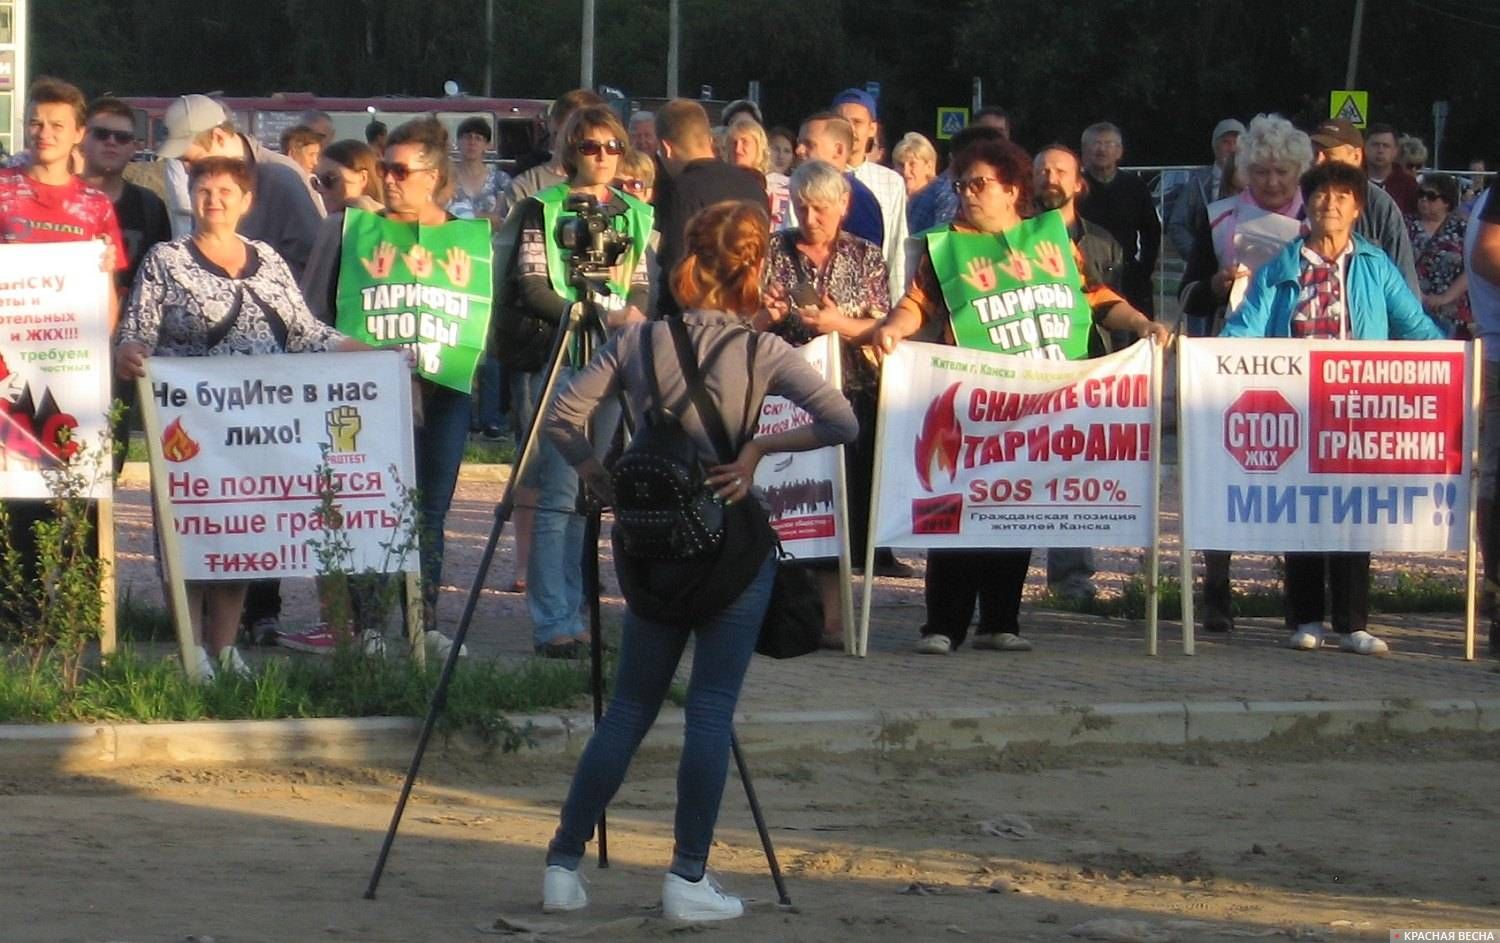 Лозунги на митинге: «Канск. Остановим теплые грабежи!», «Скажите стоп тарифам! SOS 150%»